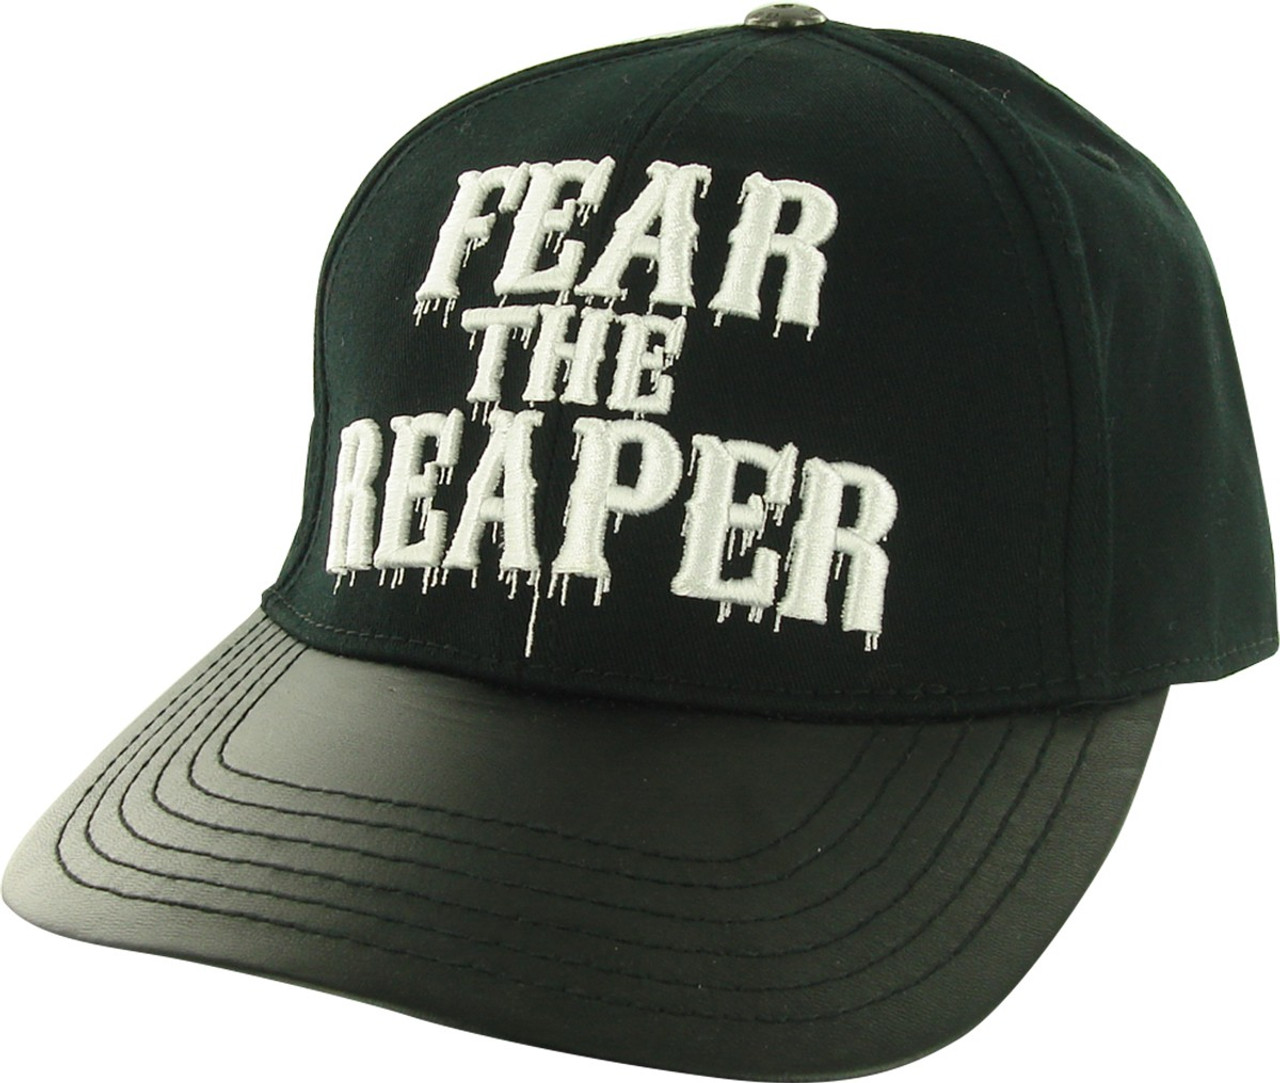 fear the reaper